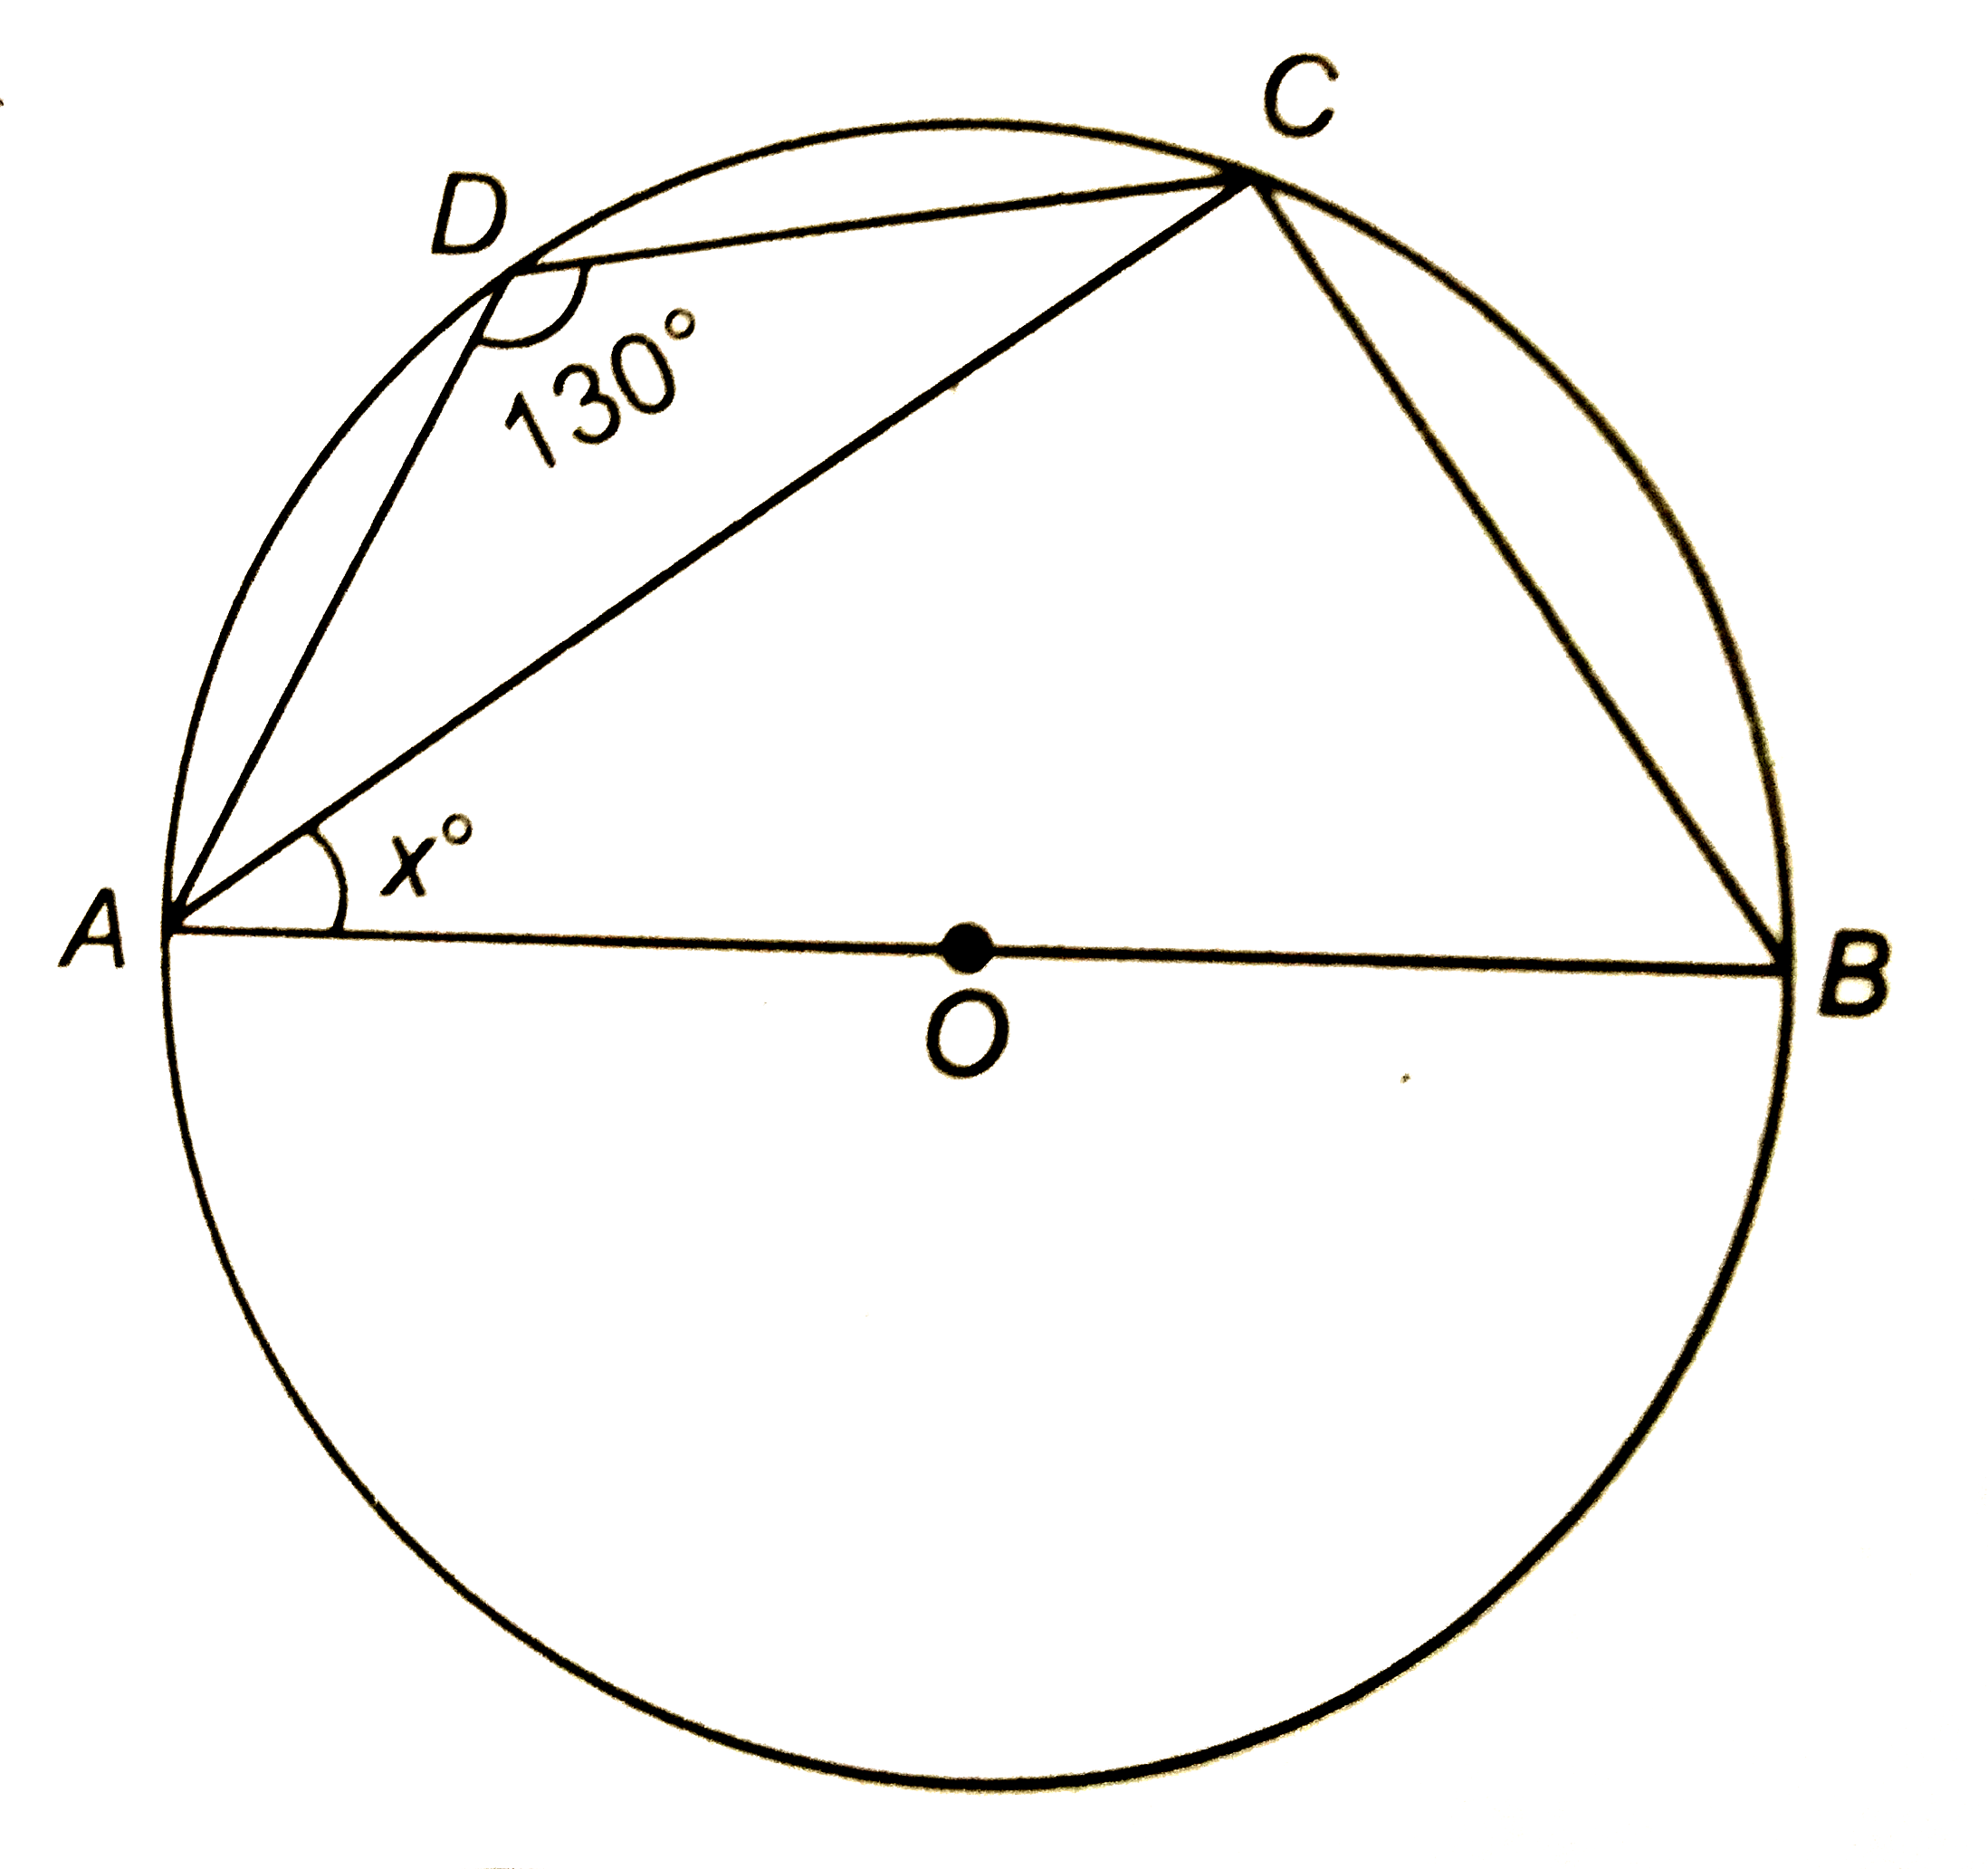 दी आकृति में, O वृत्त का केन्द्र है और angleADC=130^(@) हैं | यदि angleBAC=x^(@), तो x का मान ज्ञात कीजिए |